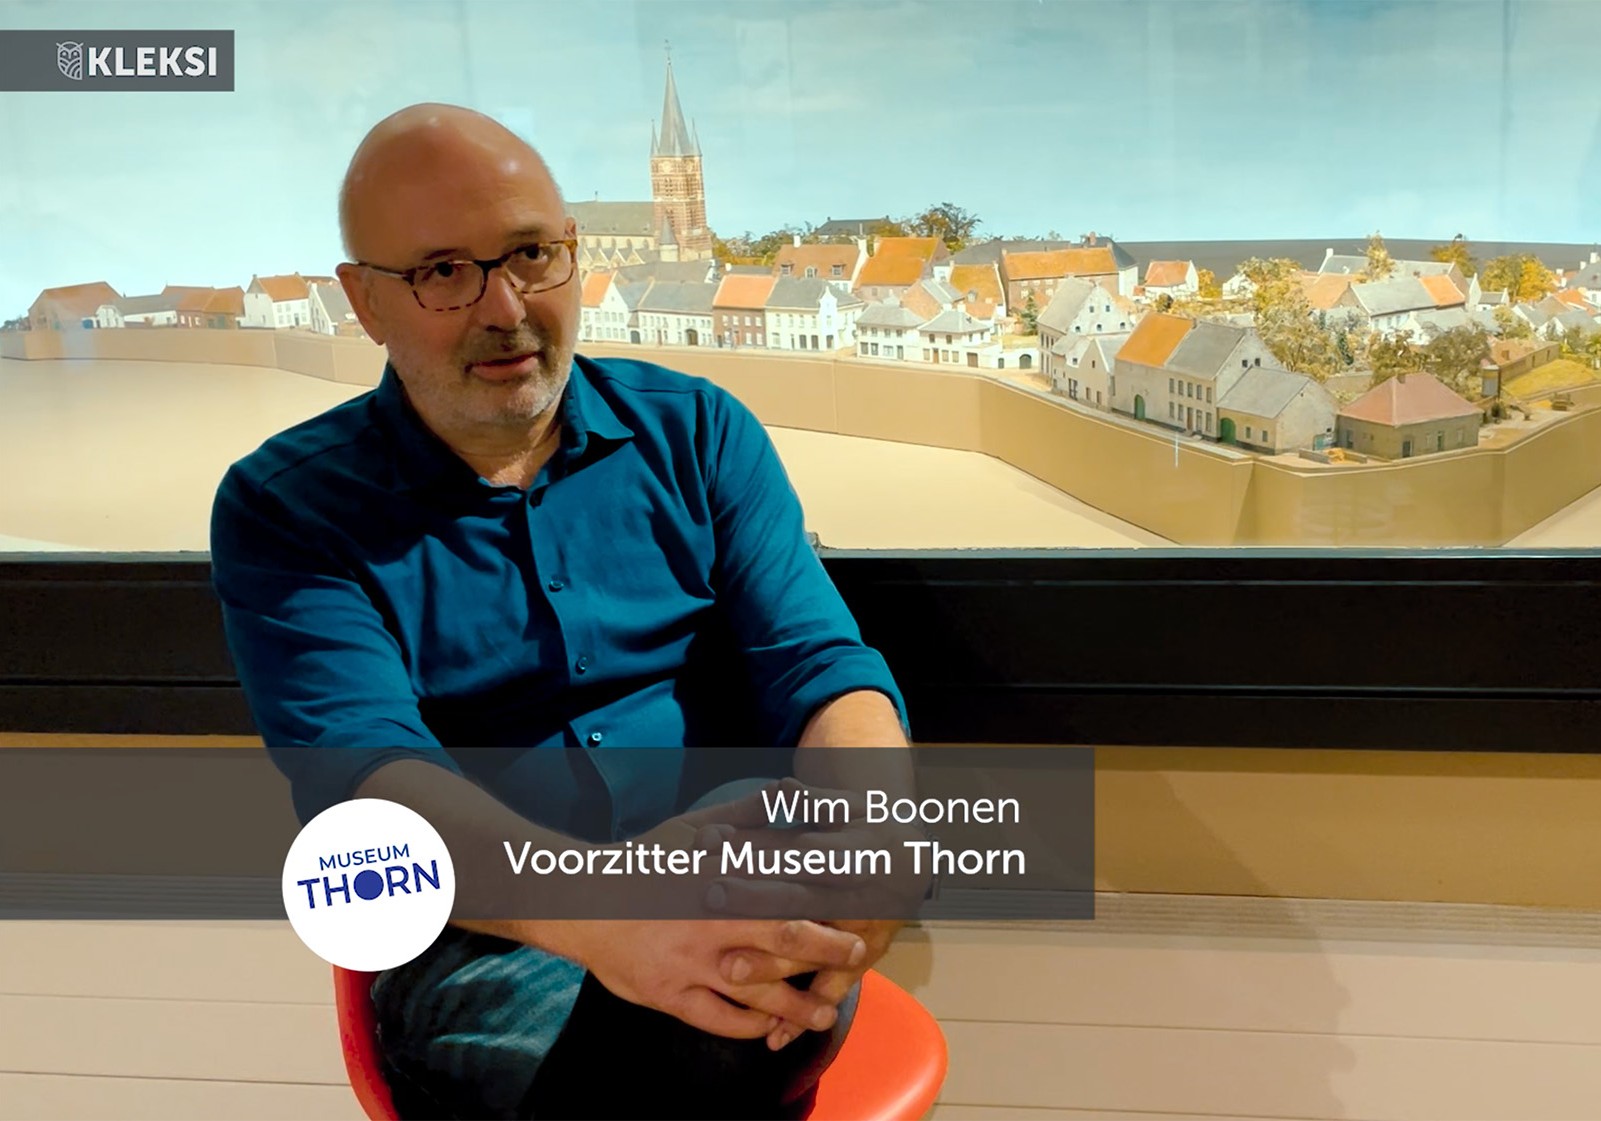  Wim Boonen, voorzitter Museum Thorn verteld waarom het museum voor KLEKSI heeft gekozen